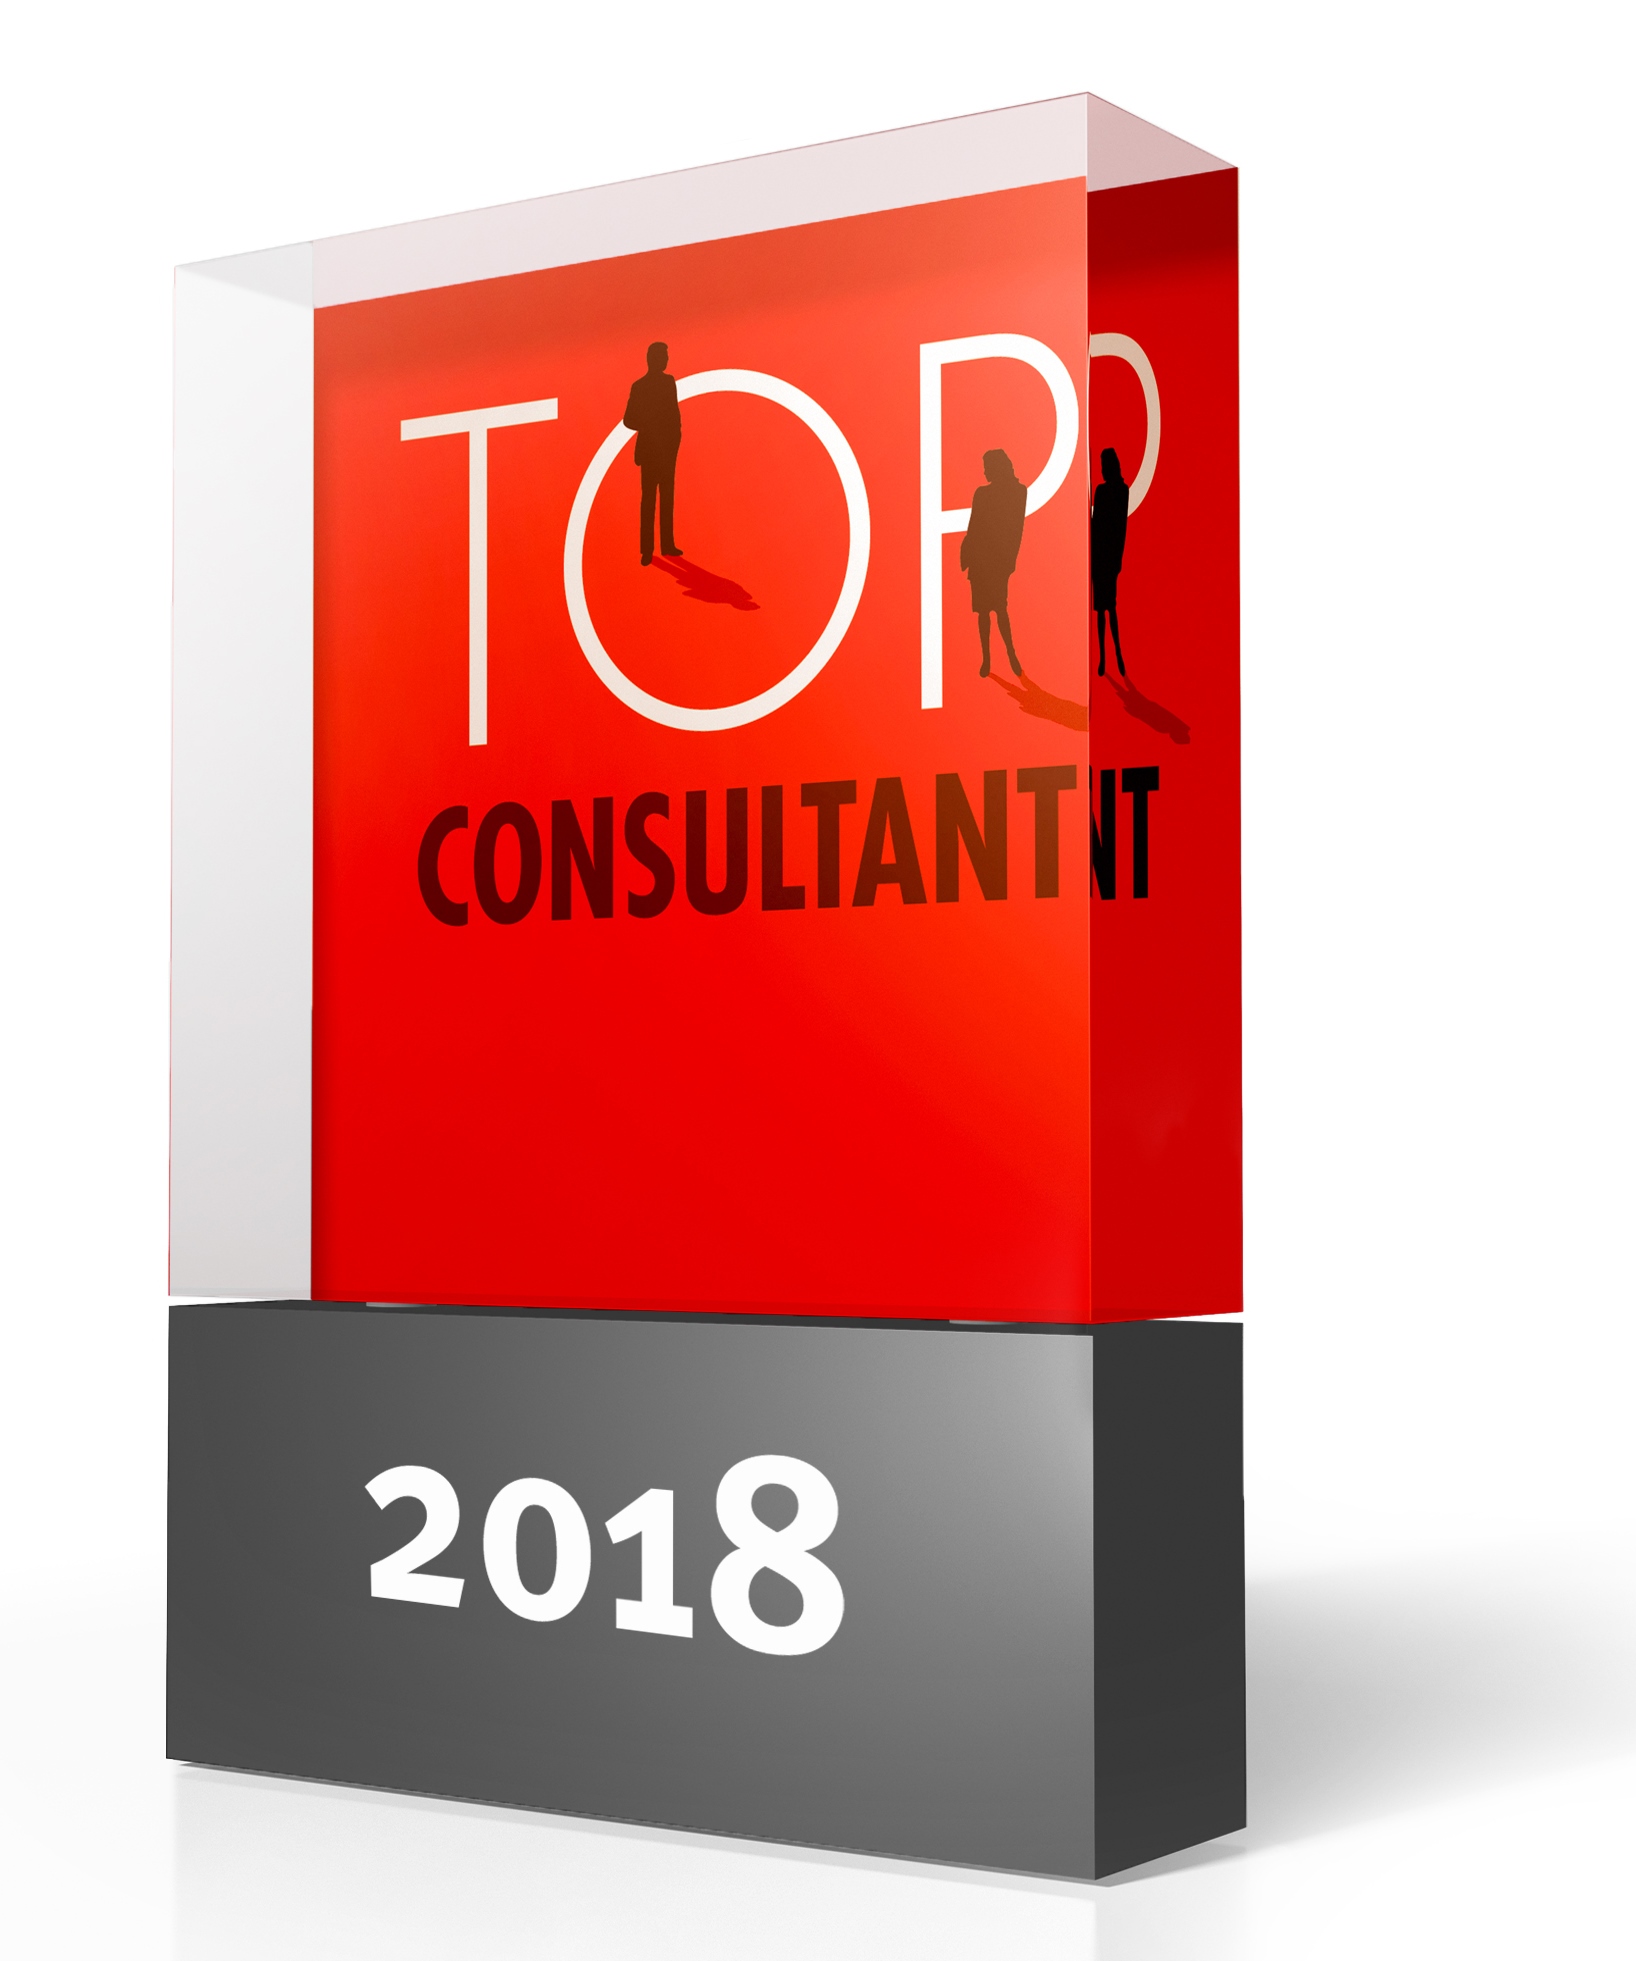 Top-Consultant 2018